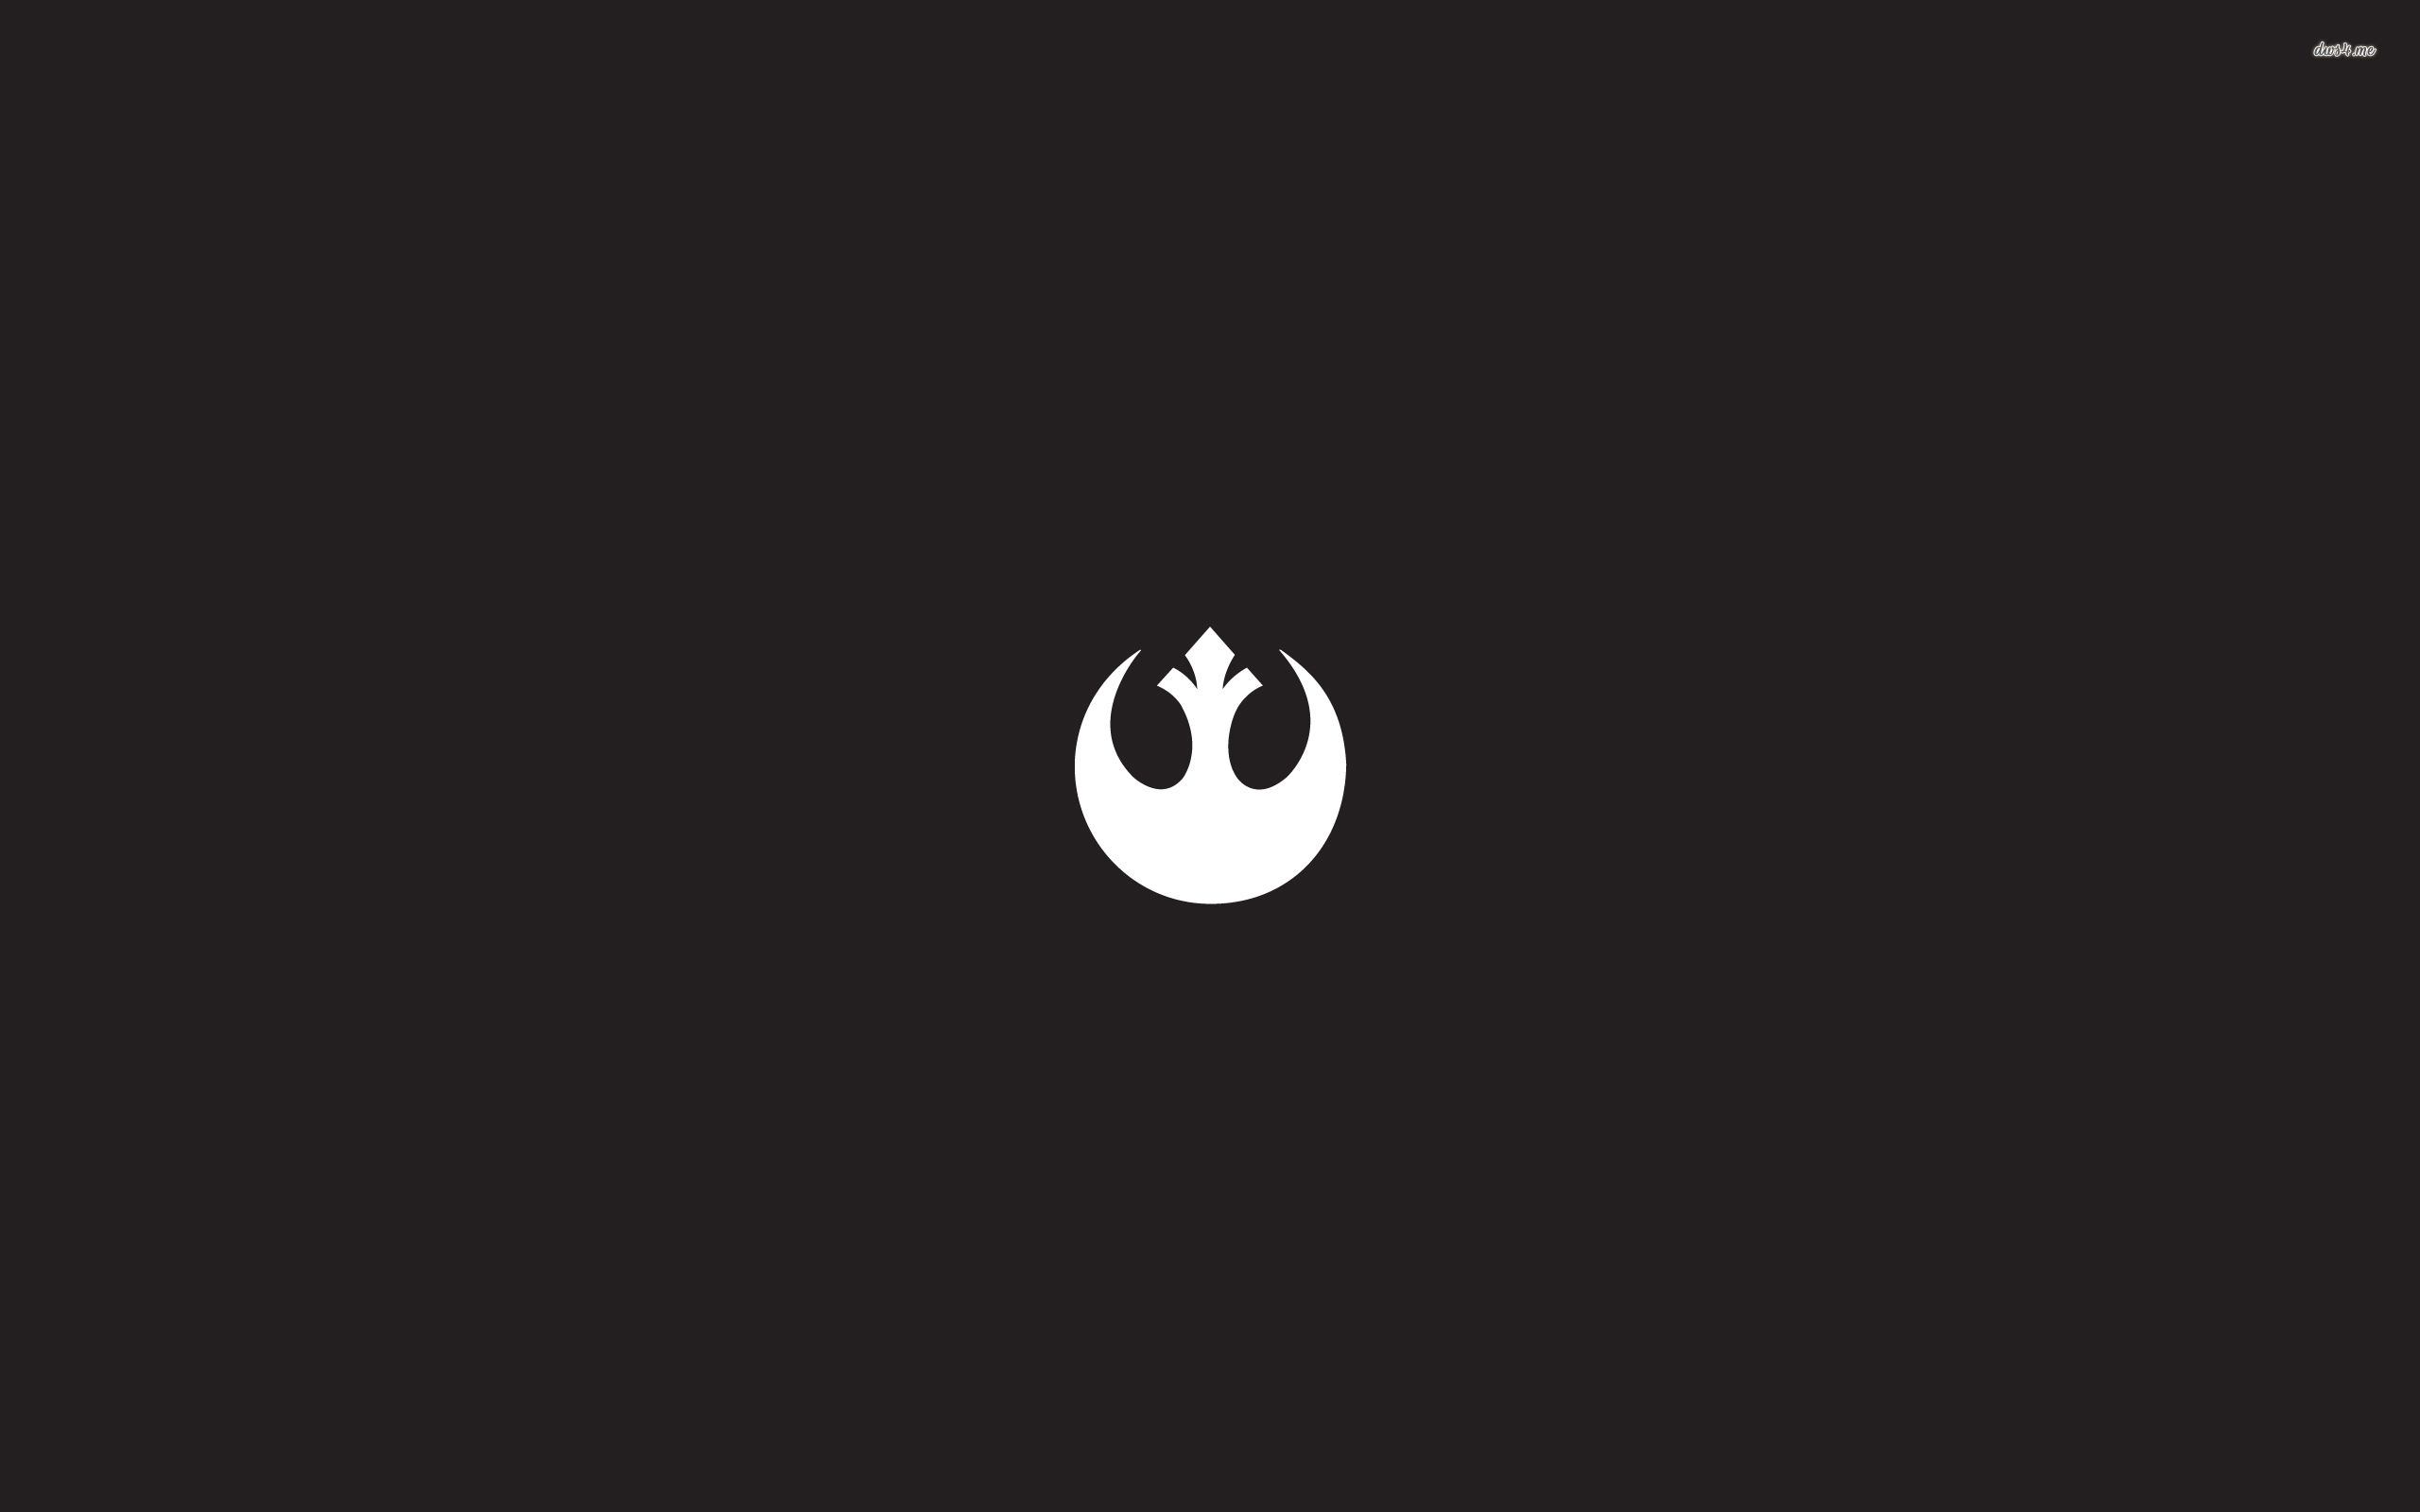 Rebel Alliance Star Wars Wallpaper Movie